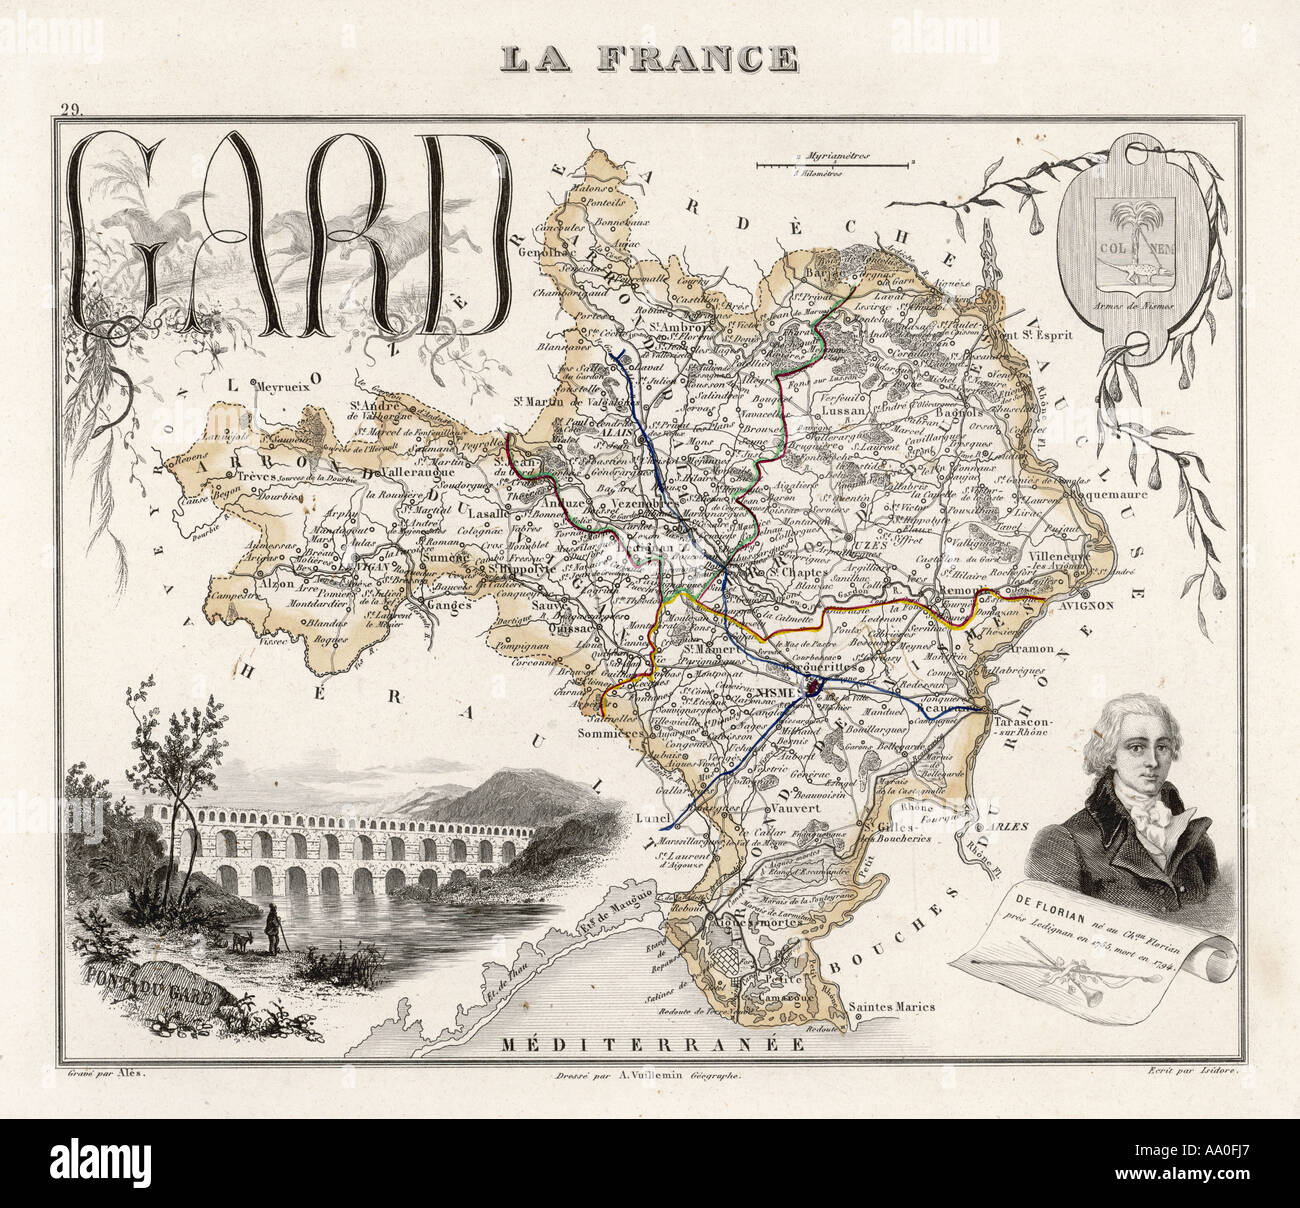 Map gard france Banque de photographies et d'images à haute résolution -  Alamy